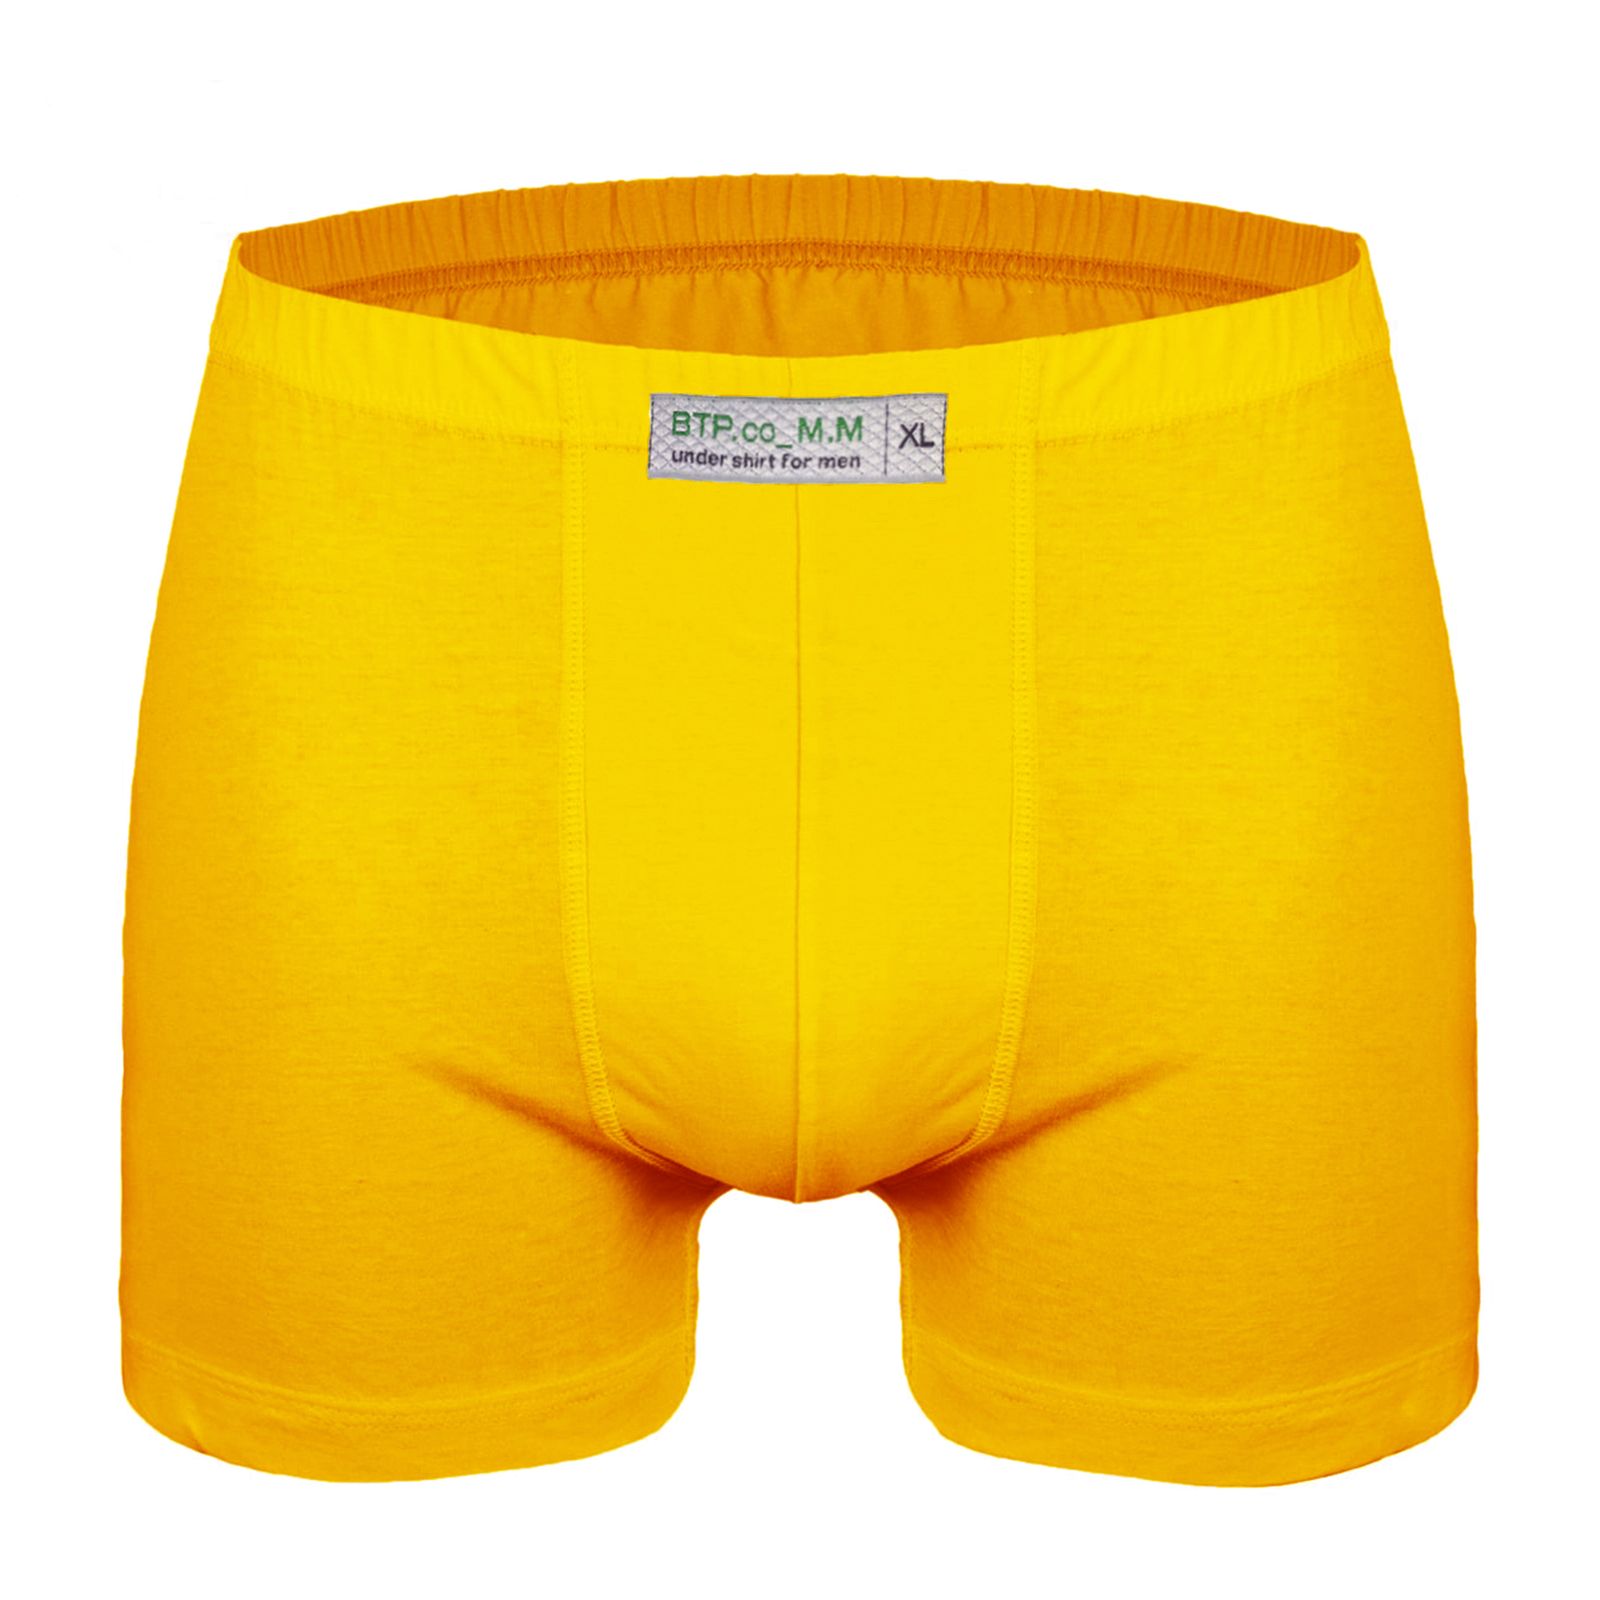 شورت مردانه برهان تن پوش مدل پادار 16-04 رنگ زرد خردلی بسته 2 عددی -  - 2